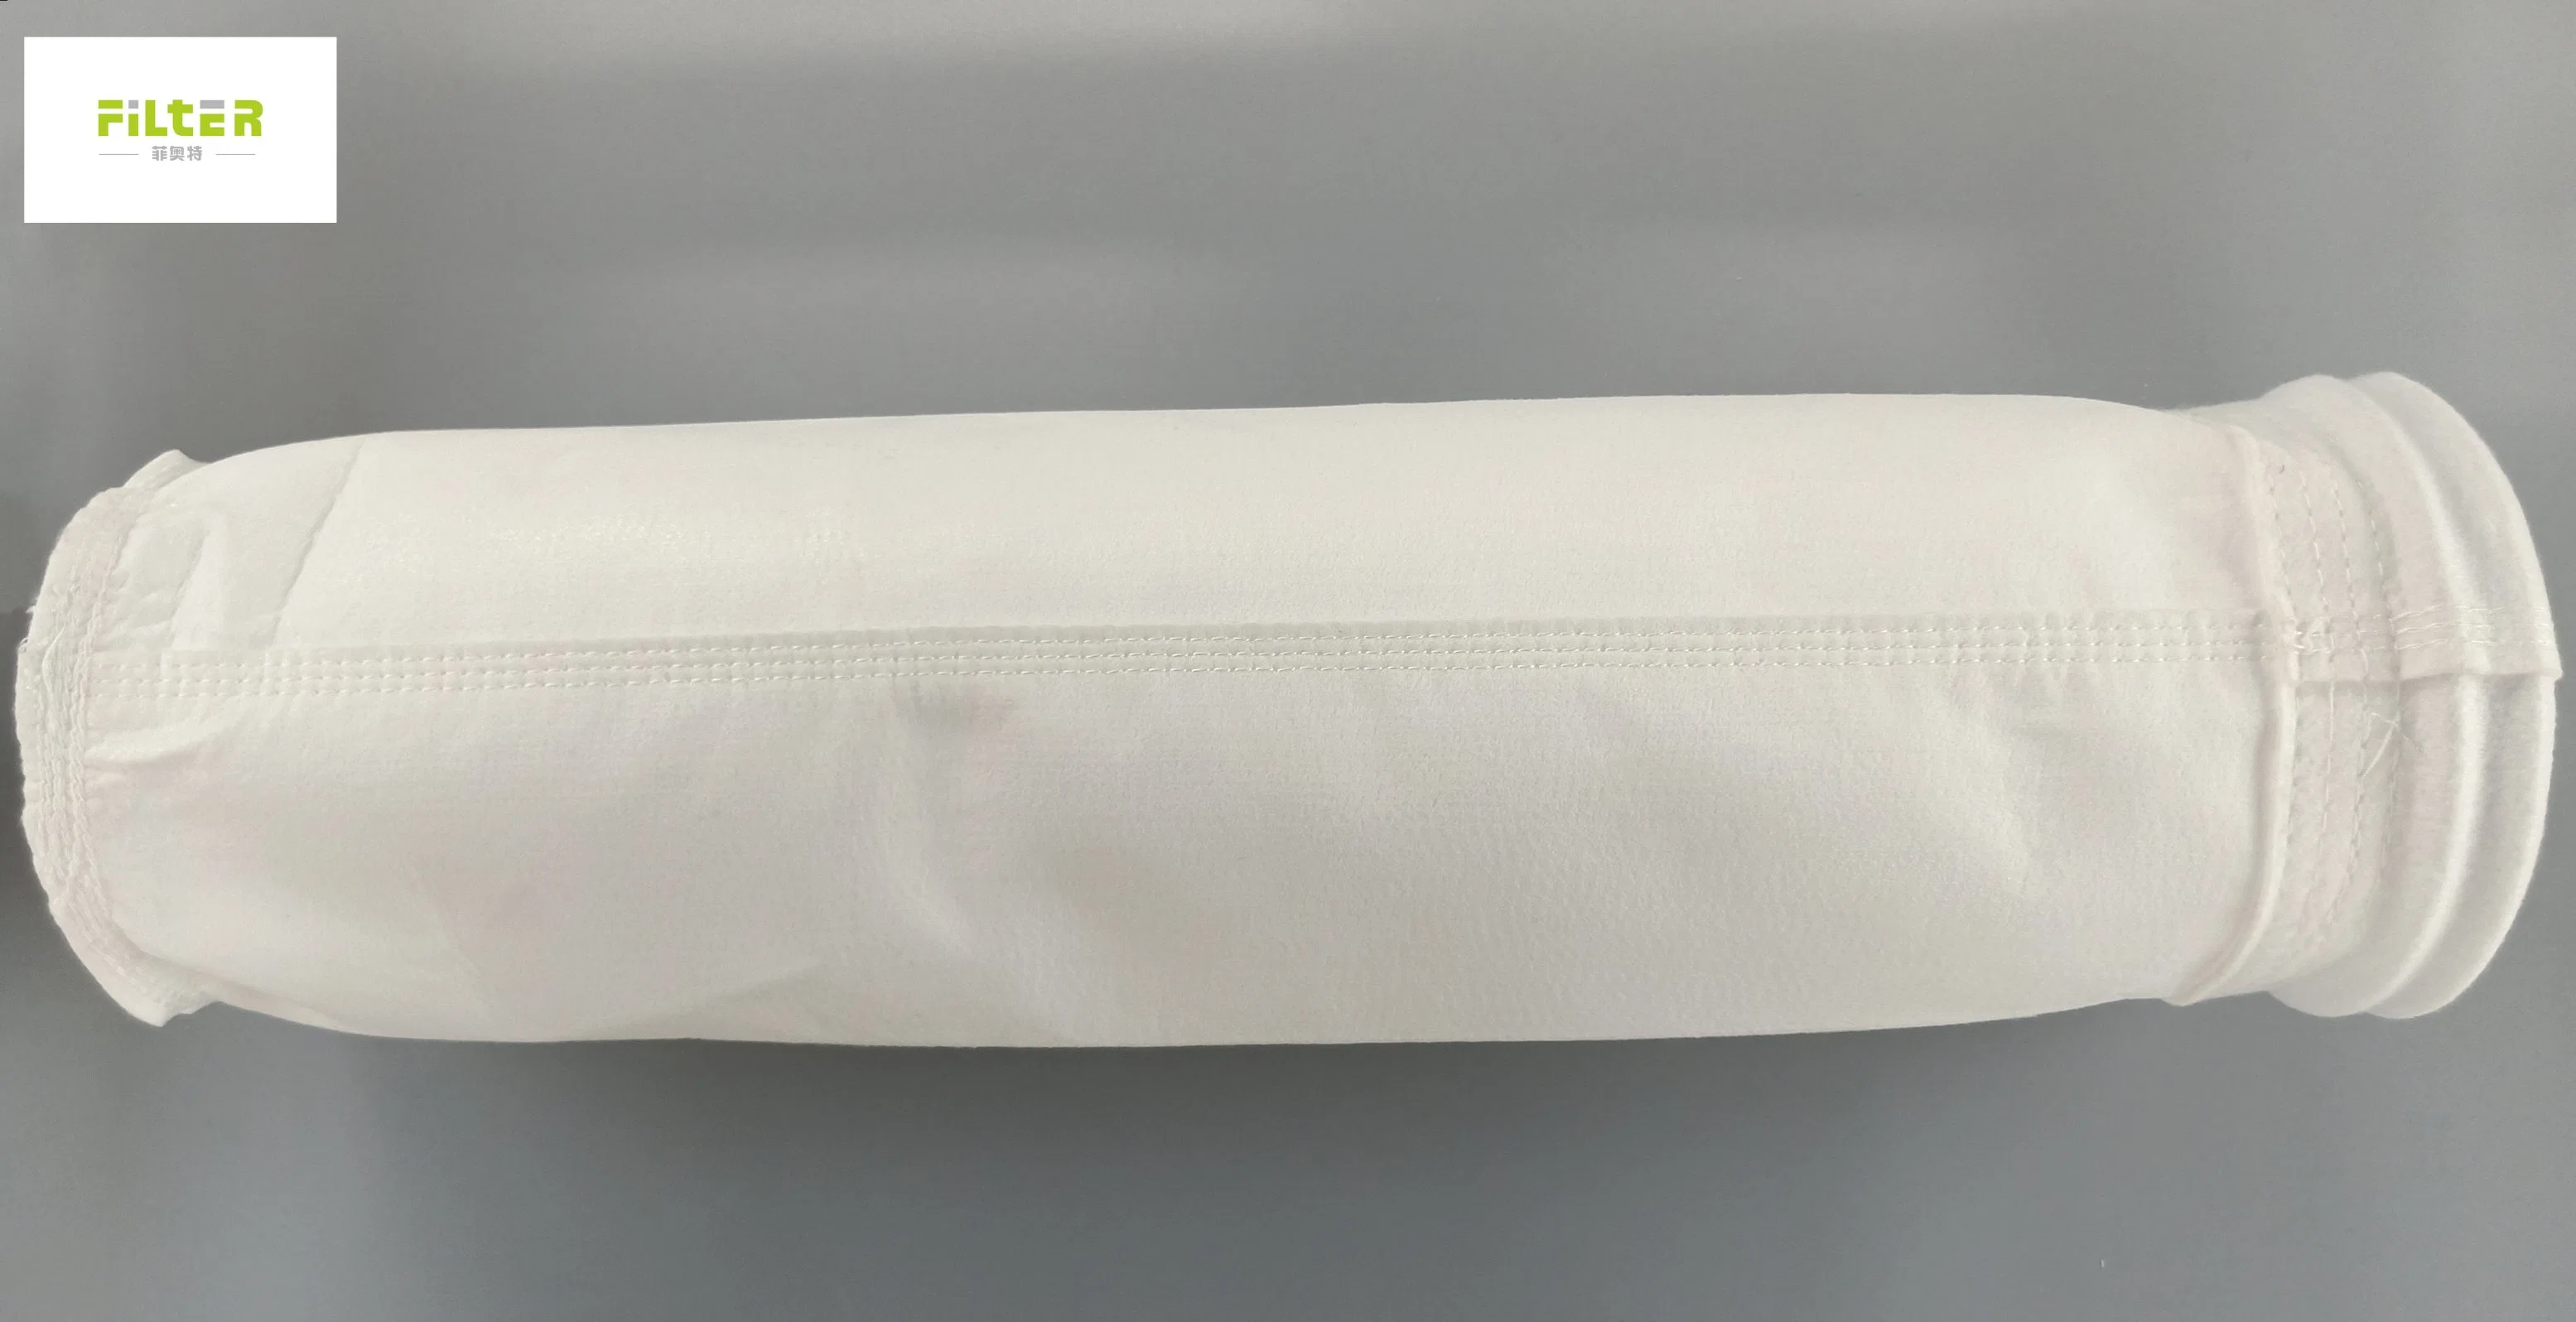 La aguja de poliéster Non-Woven puñetazos estimó la bolsa de filtro de polvo de la bolsa de filtro de aire para el filtro colector de polvo